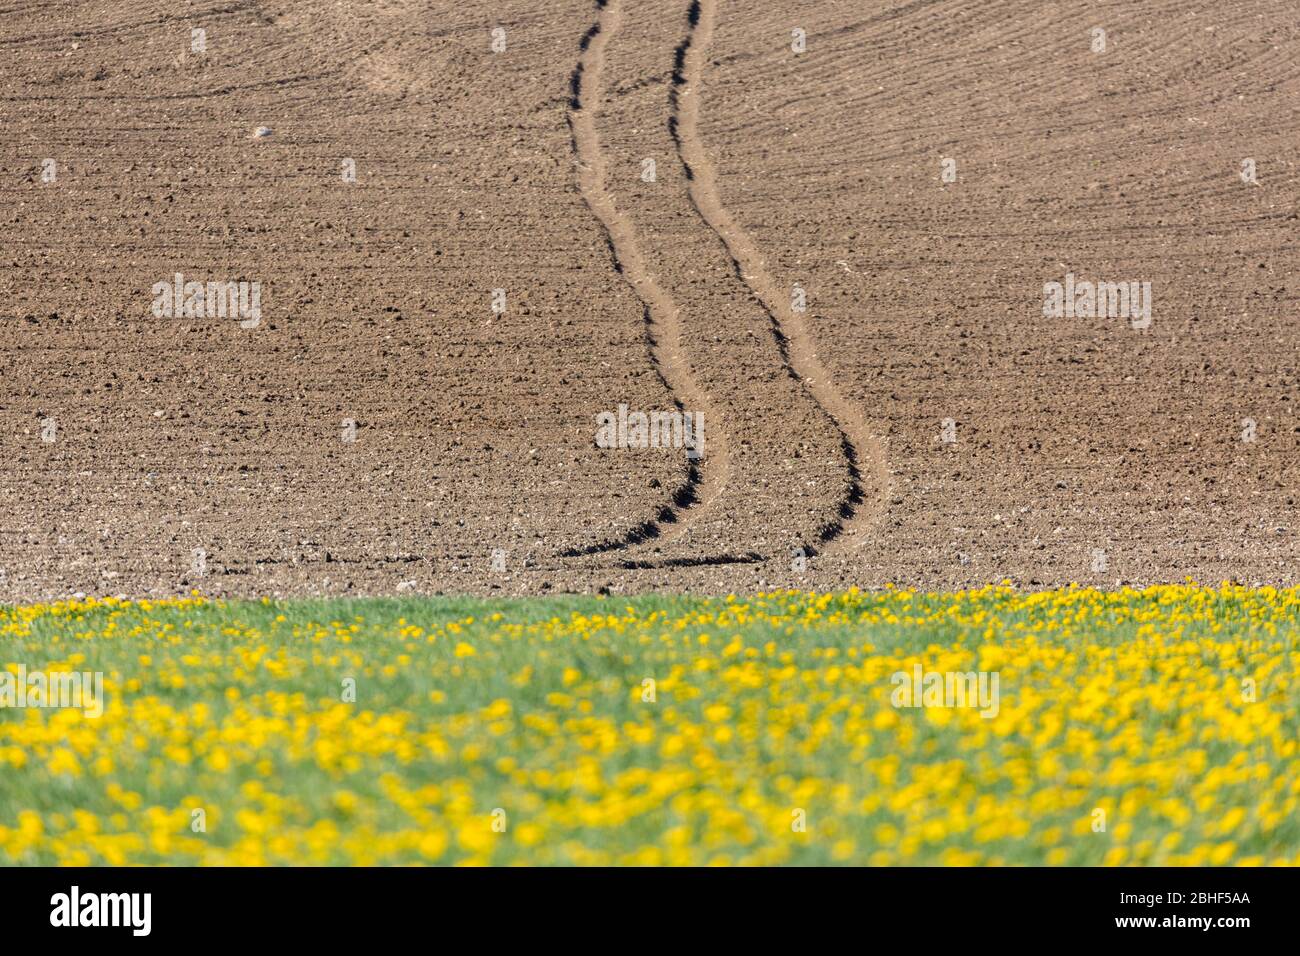 Le tracteur suit un champ non planté qui mène à thoriugh. Au premier plan, un pré avec des fleurs jaunes. Concept pour l'agriculture, l'agriculture, la culture. Banque D'Images